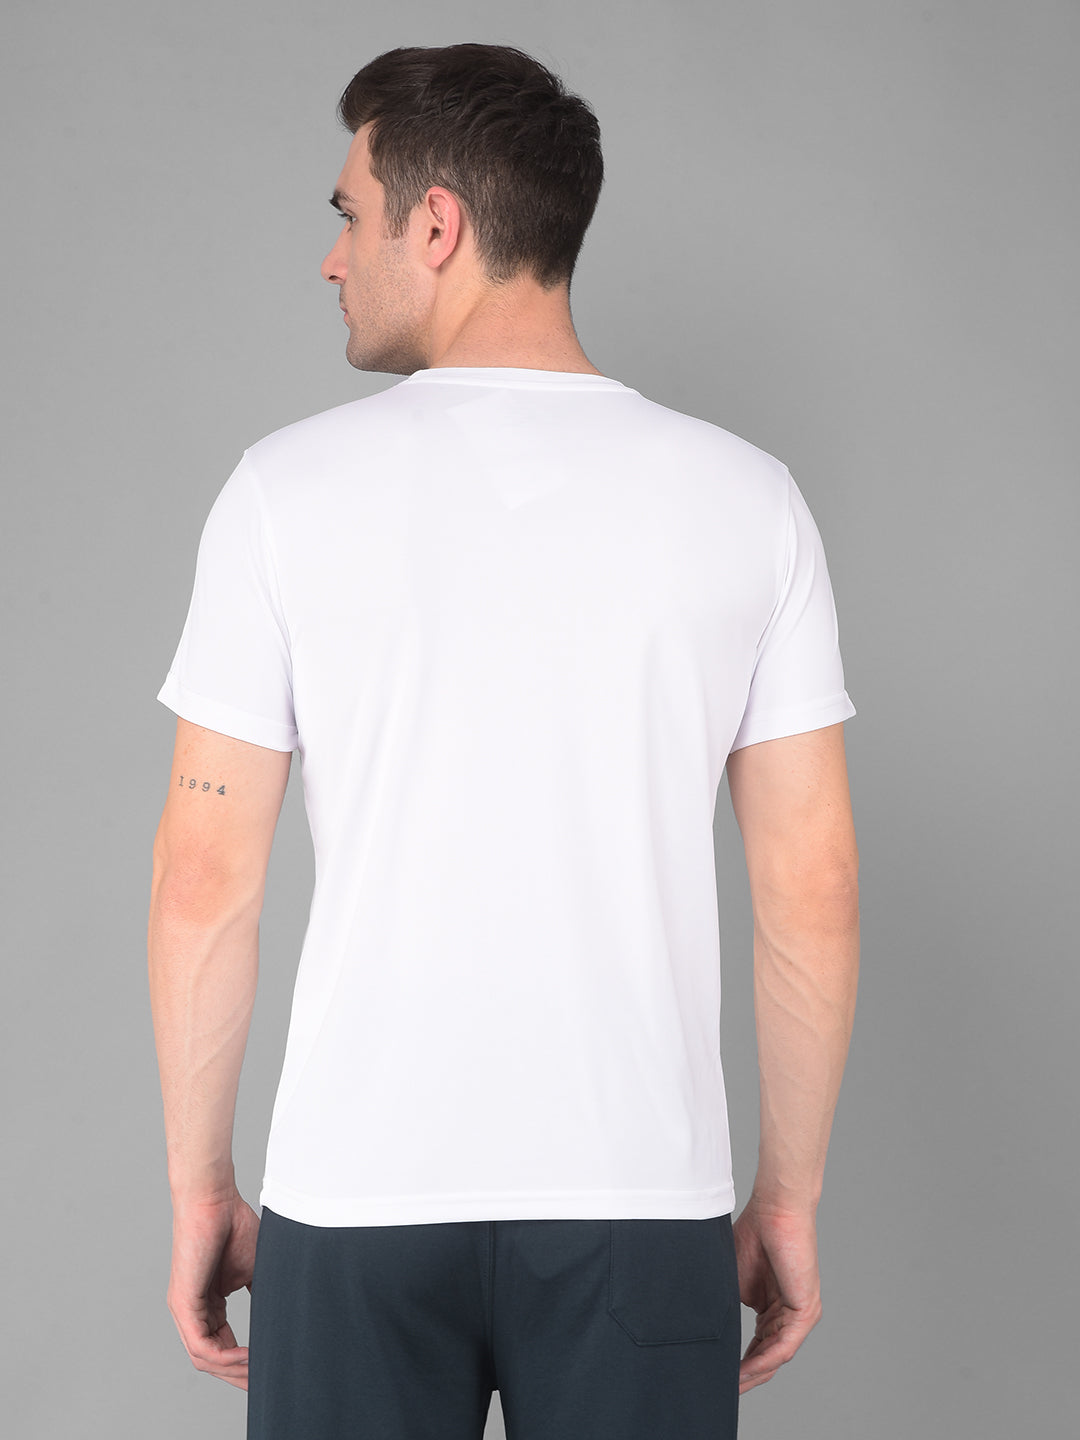 cobb solid white round neck active wear t-shirt